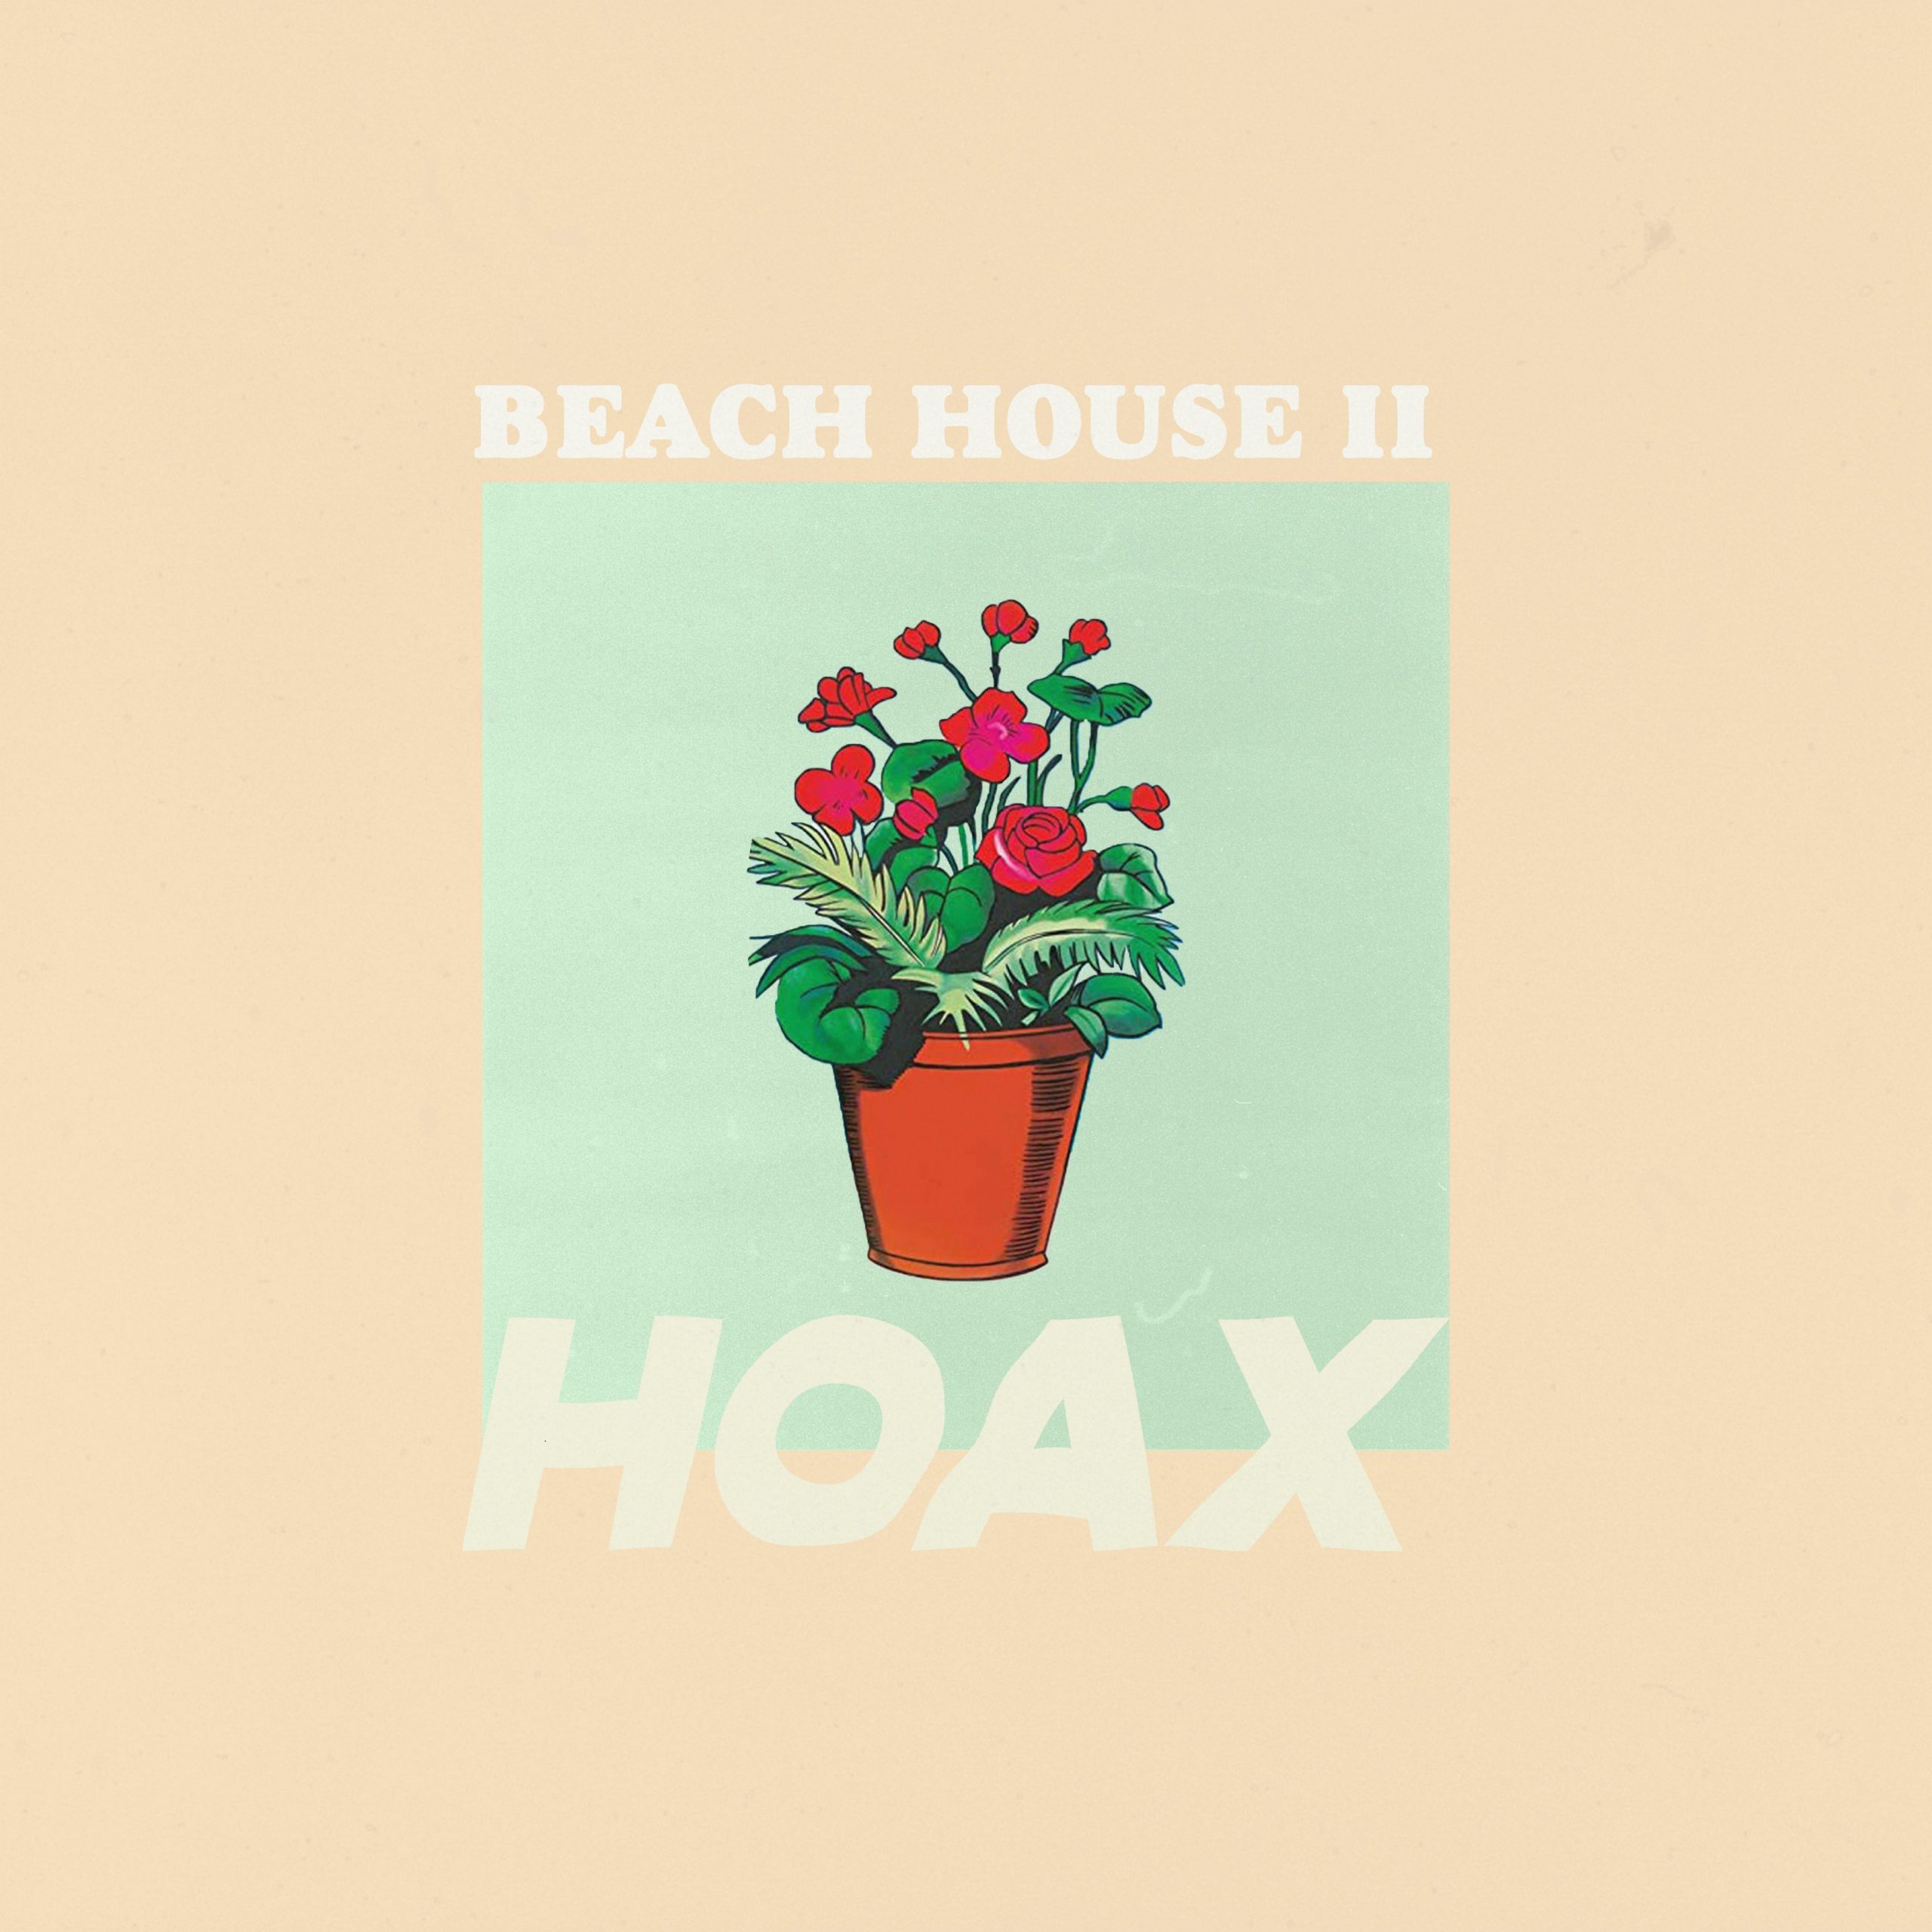 beach house ii - hoax - usa - indie - indie music - indie pop - indie rock - indie folk - new music - music blog - wolf in a suit - wolfinasuit - wolf in a suit blog - wolf in a suit music blog